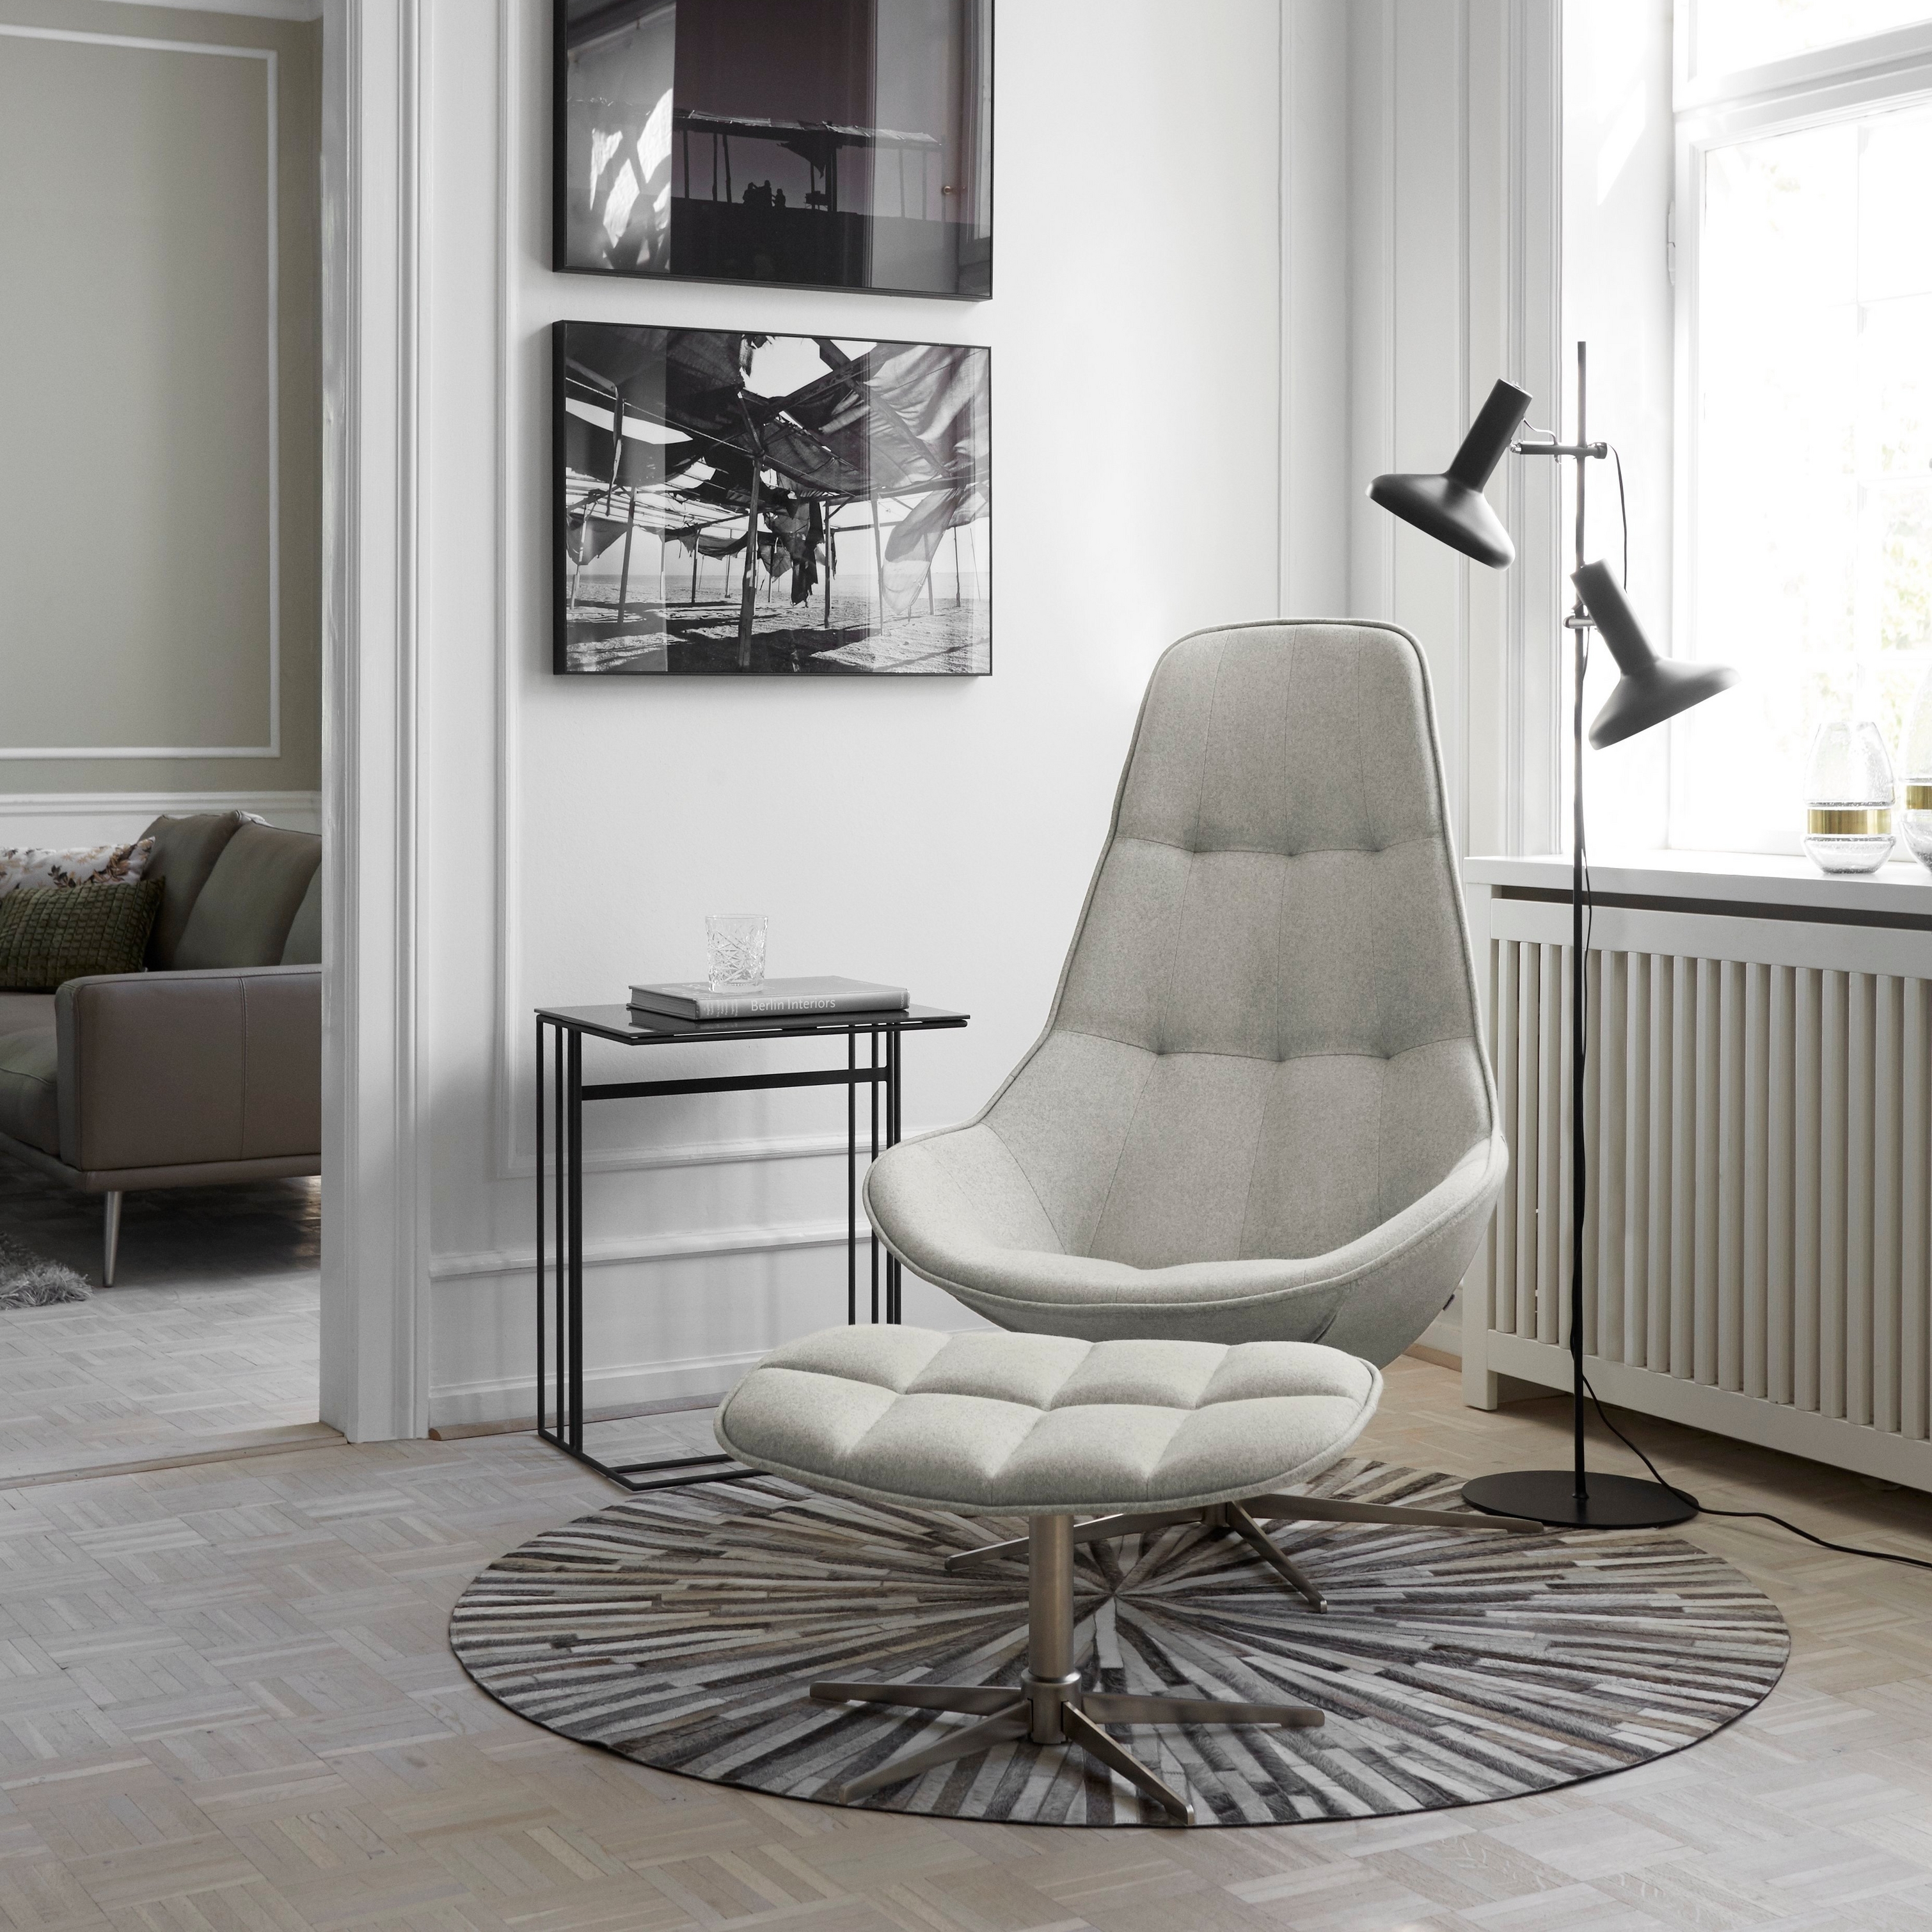 Boston アームチェア | デンマークデザインの家具 | ボーコンセプト